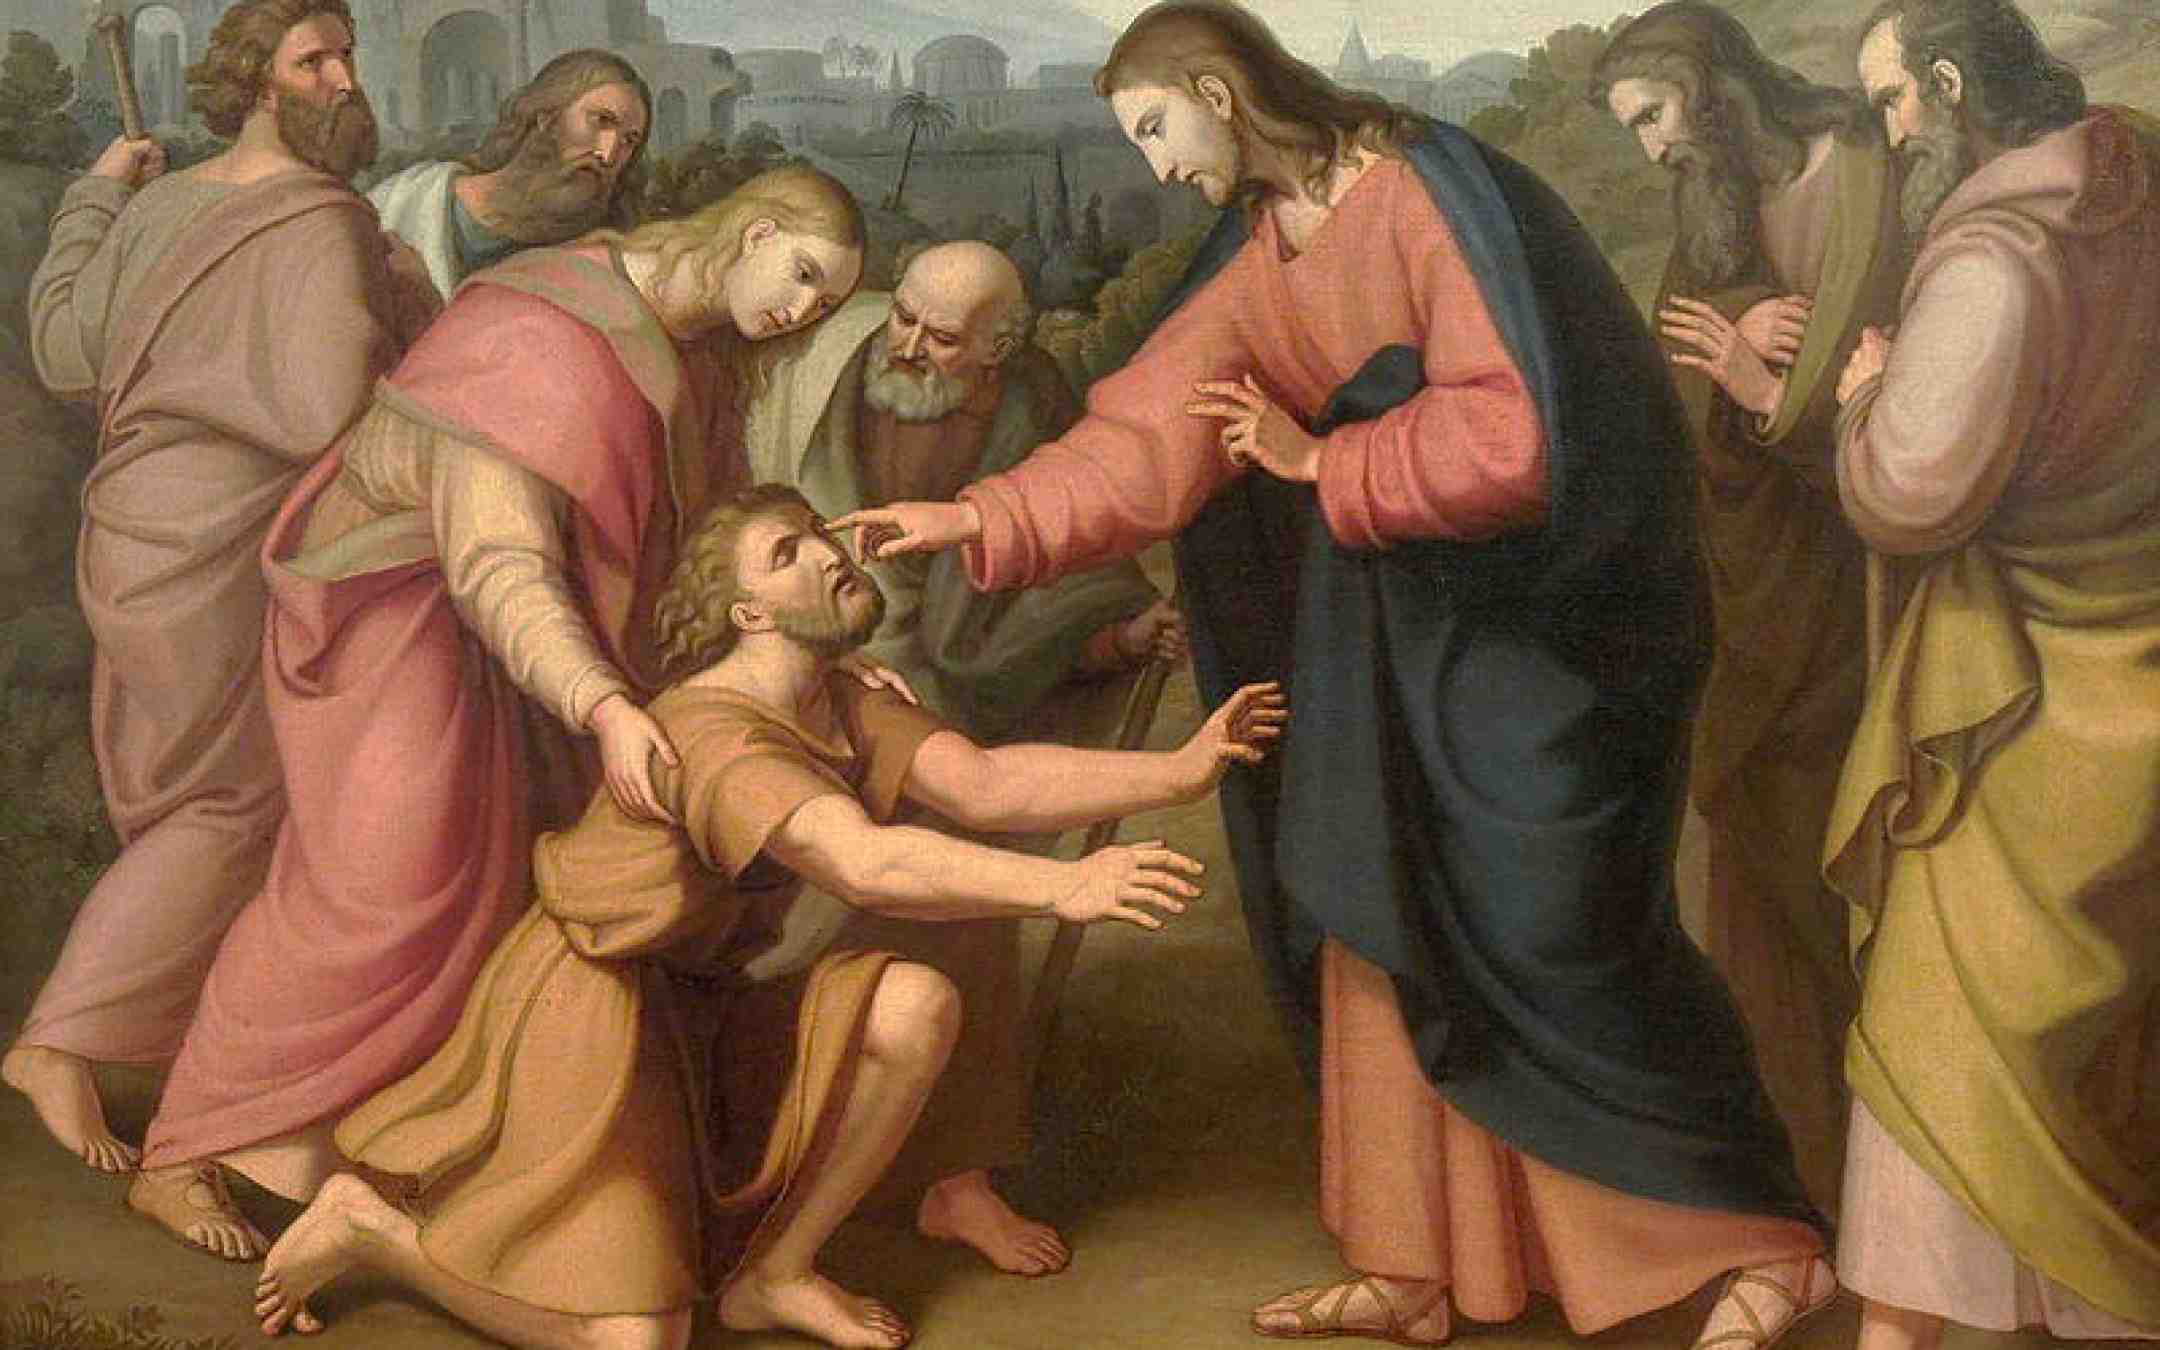 Jeesus parantaa sokeana syntyneen miehen Václav_Mánes´n maalaus 1800-luvulta